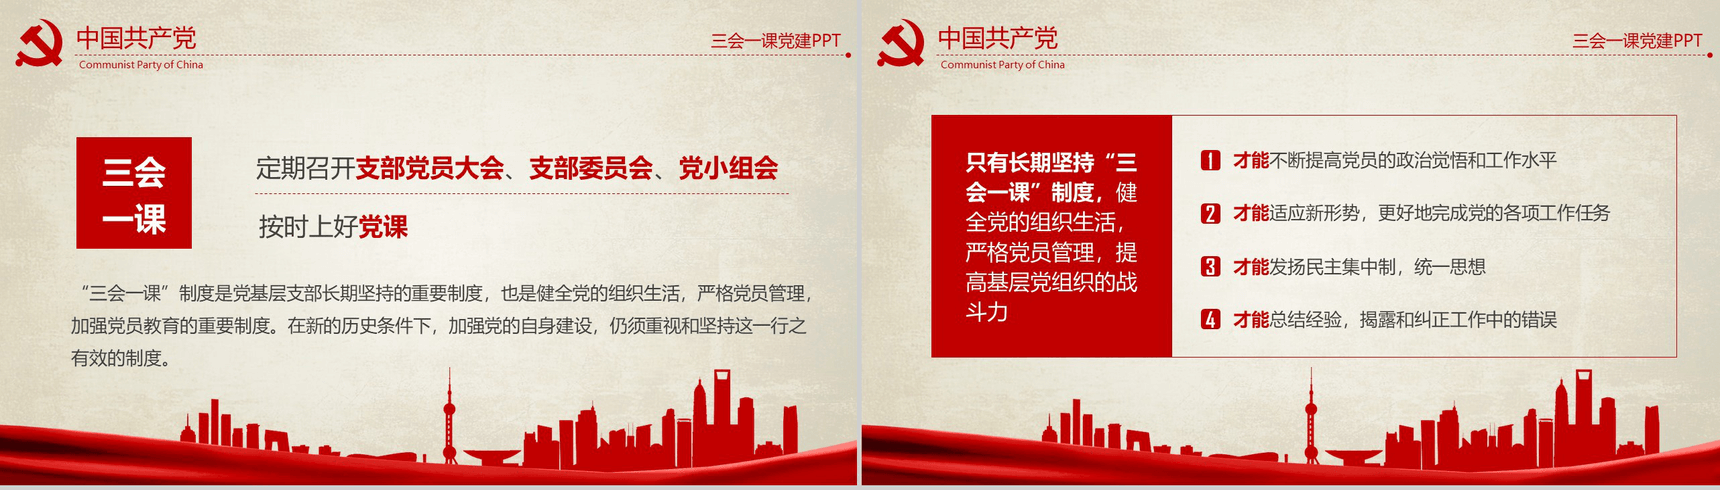 农村基层党建知识红色反腐思想指南和行动纲领学习教育PPT模板-3